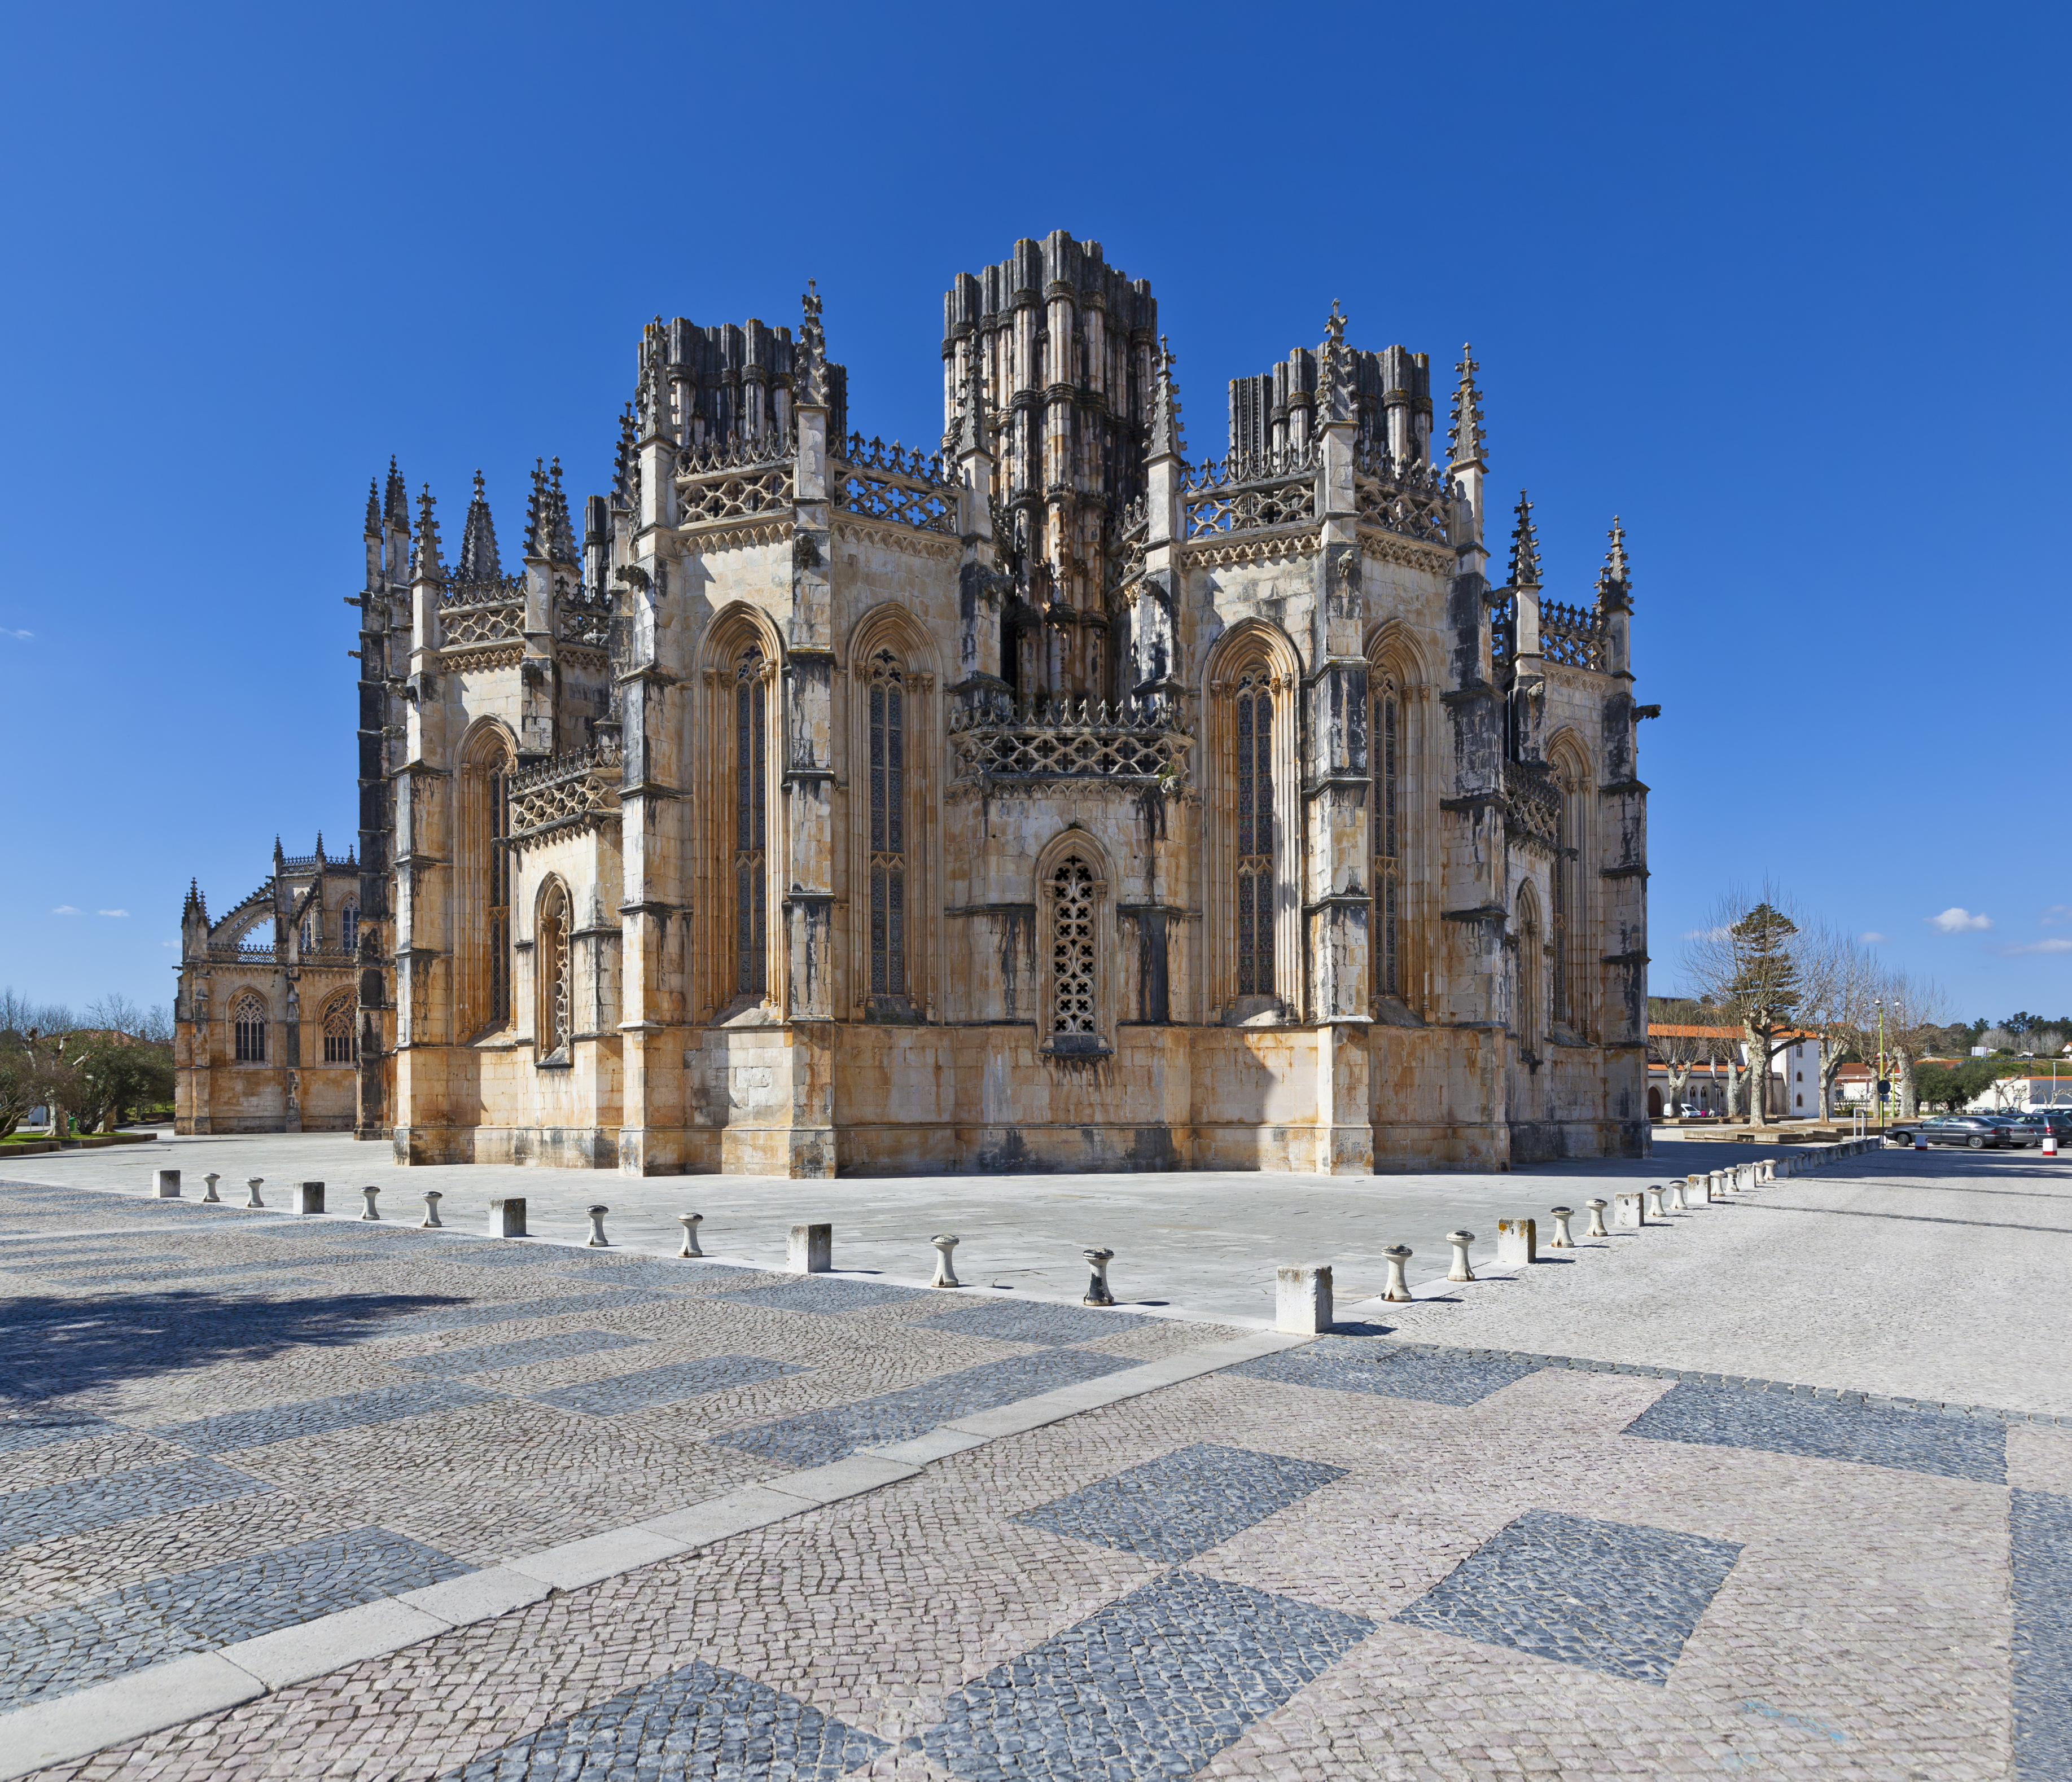 Mosteiro de Santa Maria da Vitória | Batalha, Portugal Attractions